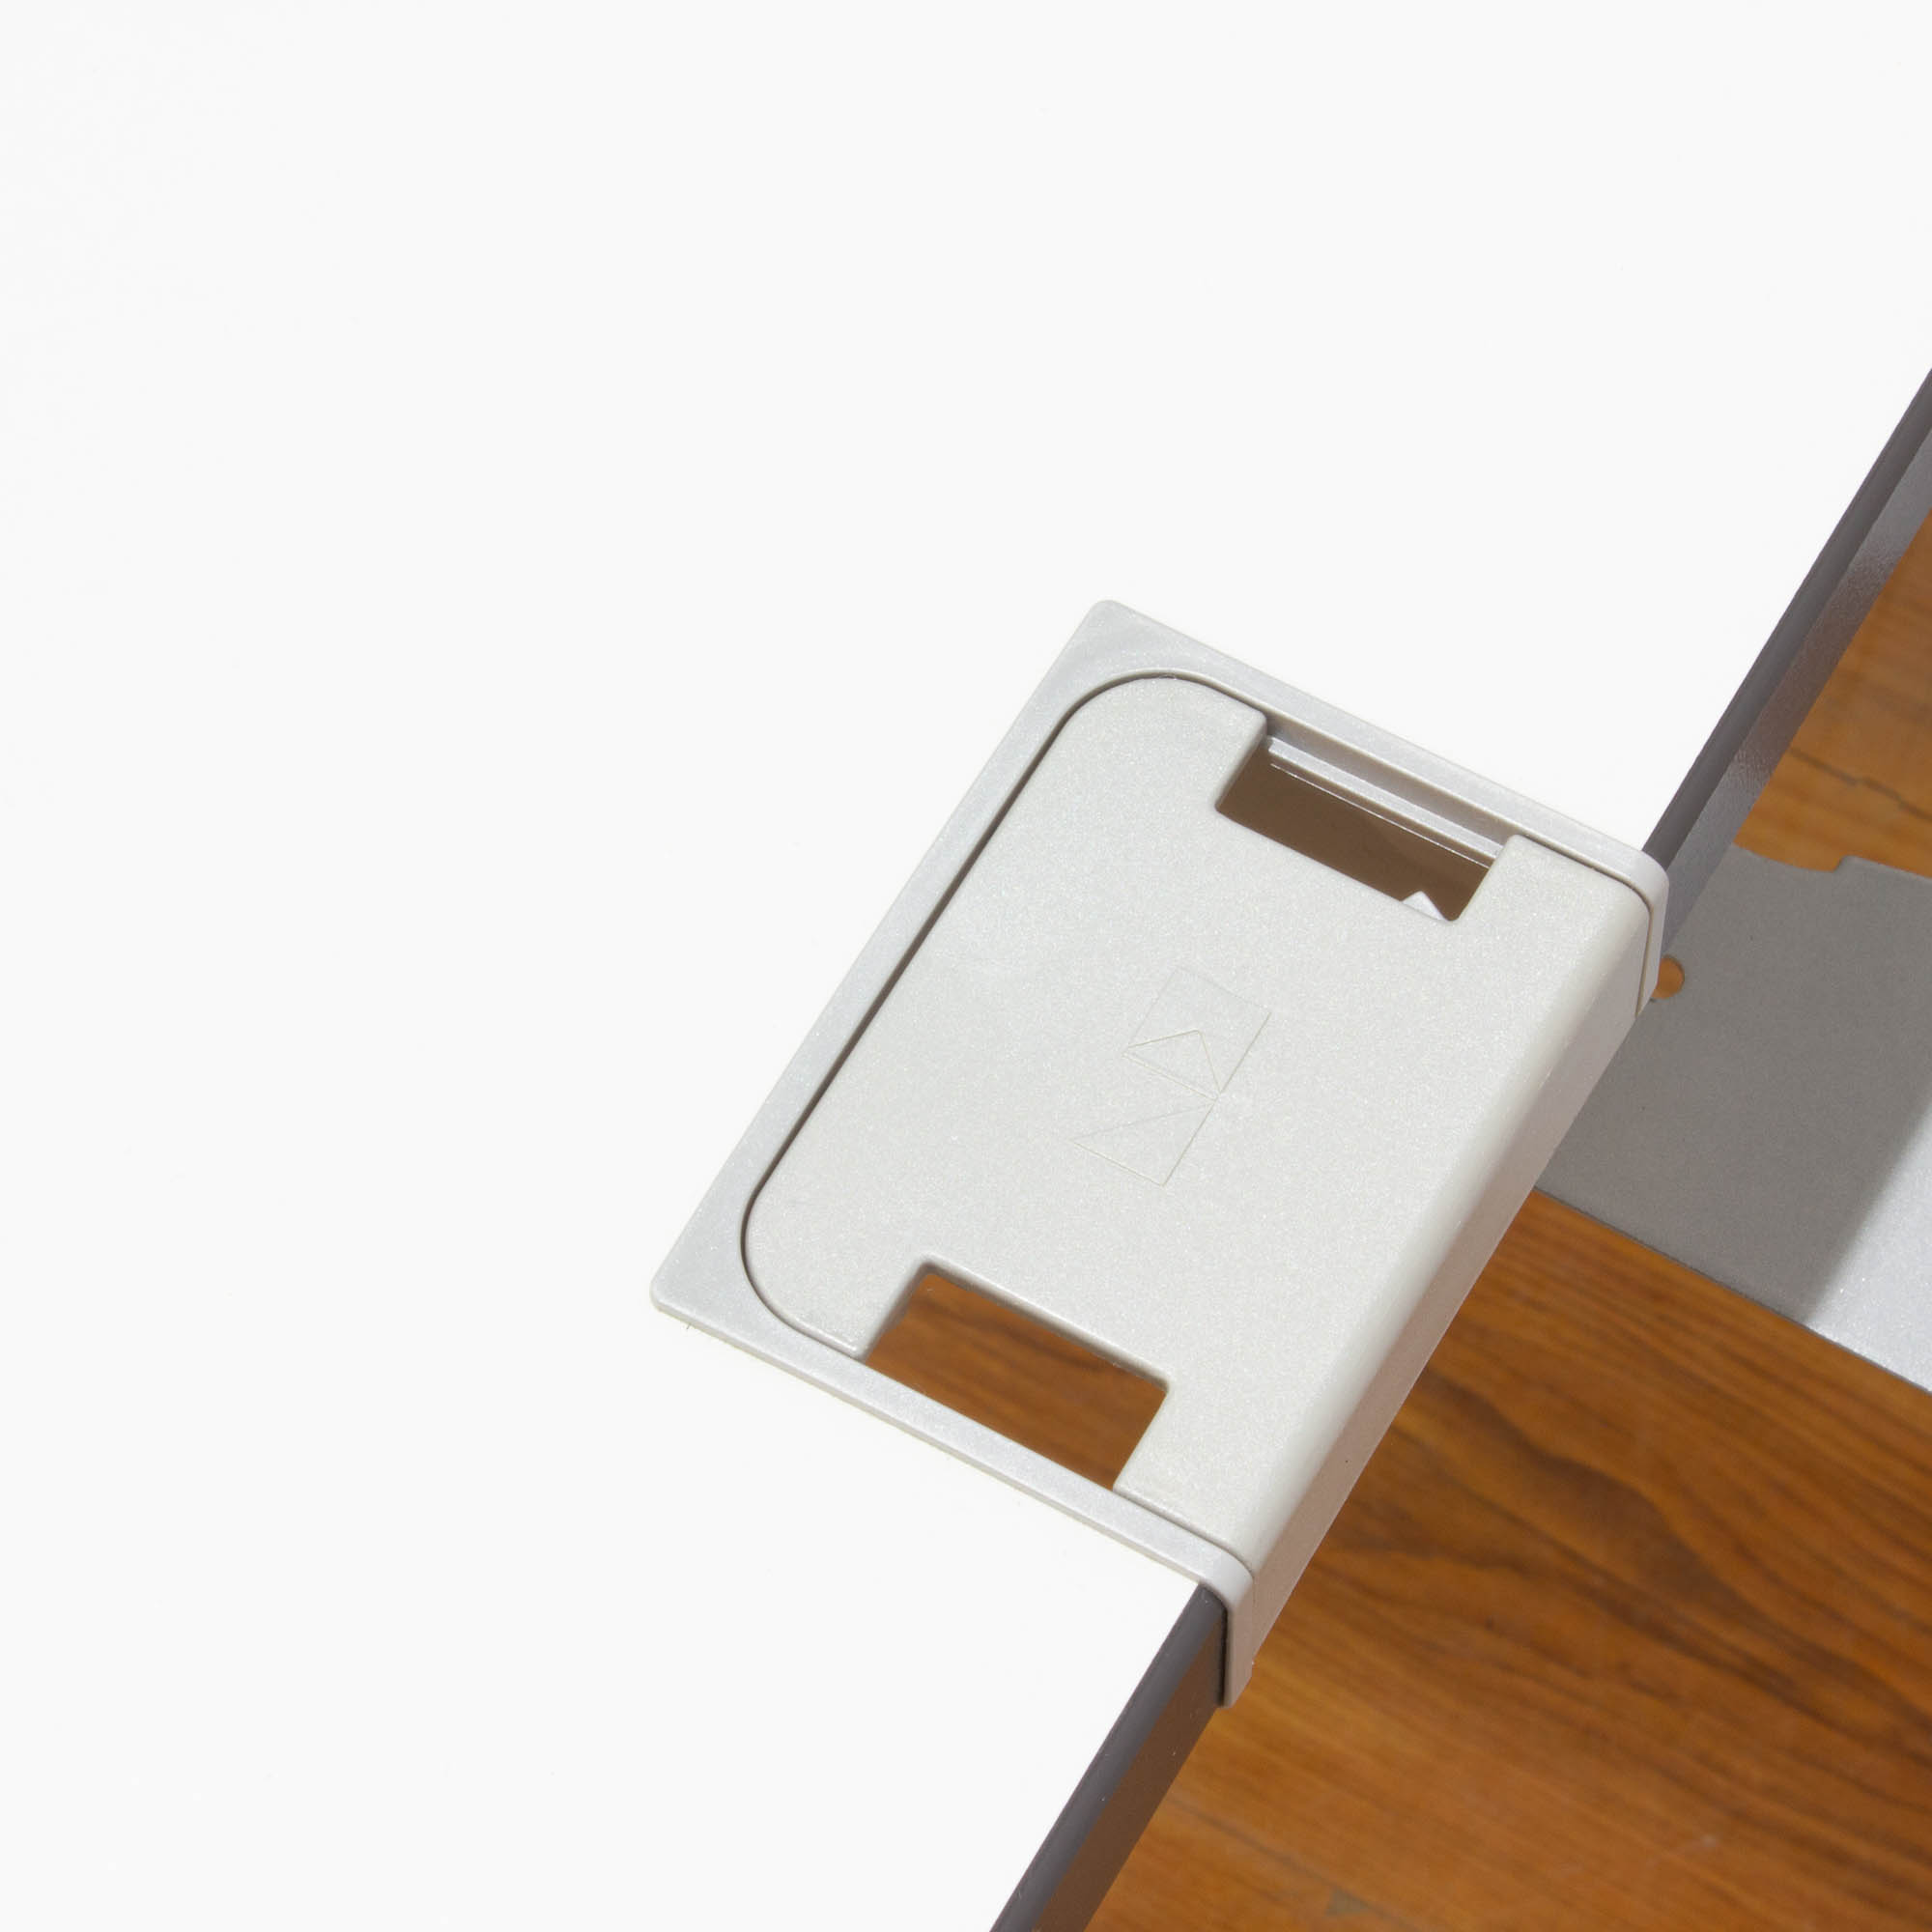 König & Neurath Schreibtisch Basic 4 - 180x80 weiß - 4-Fußgestell in silber